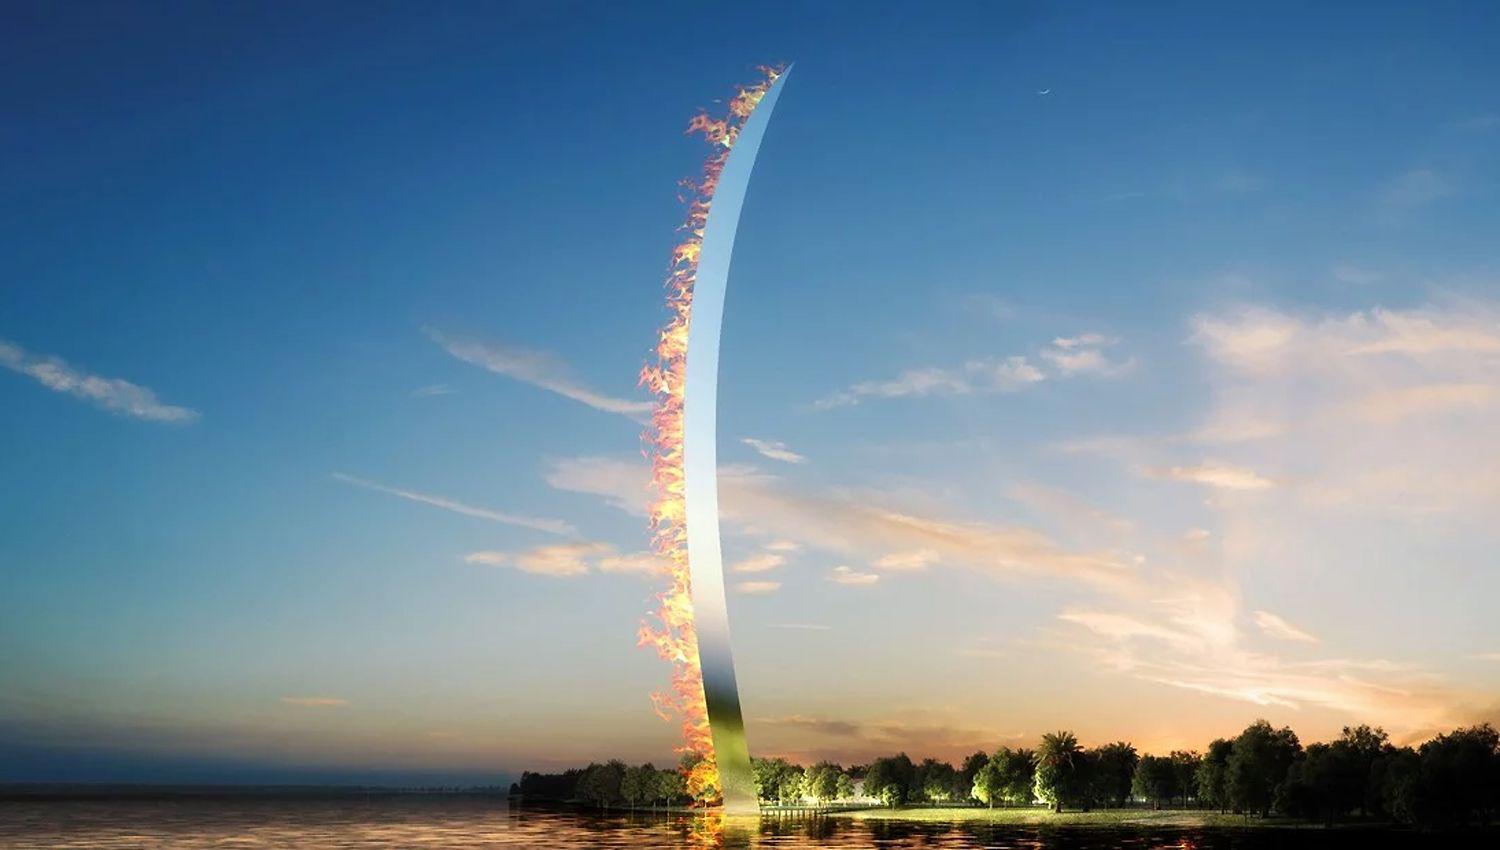 El monumento se encender� con una llama a lo largo de su filo los días conmemorativos